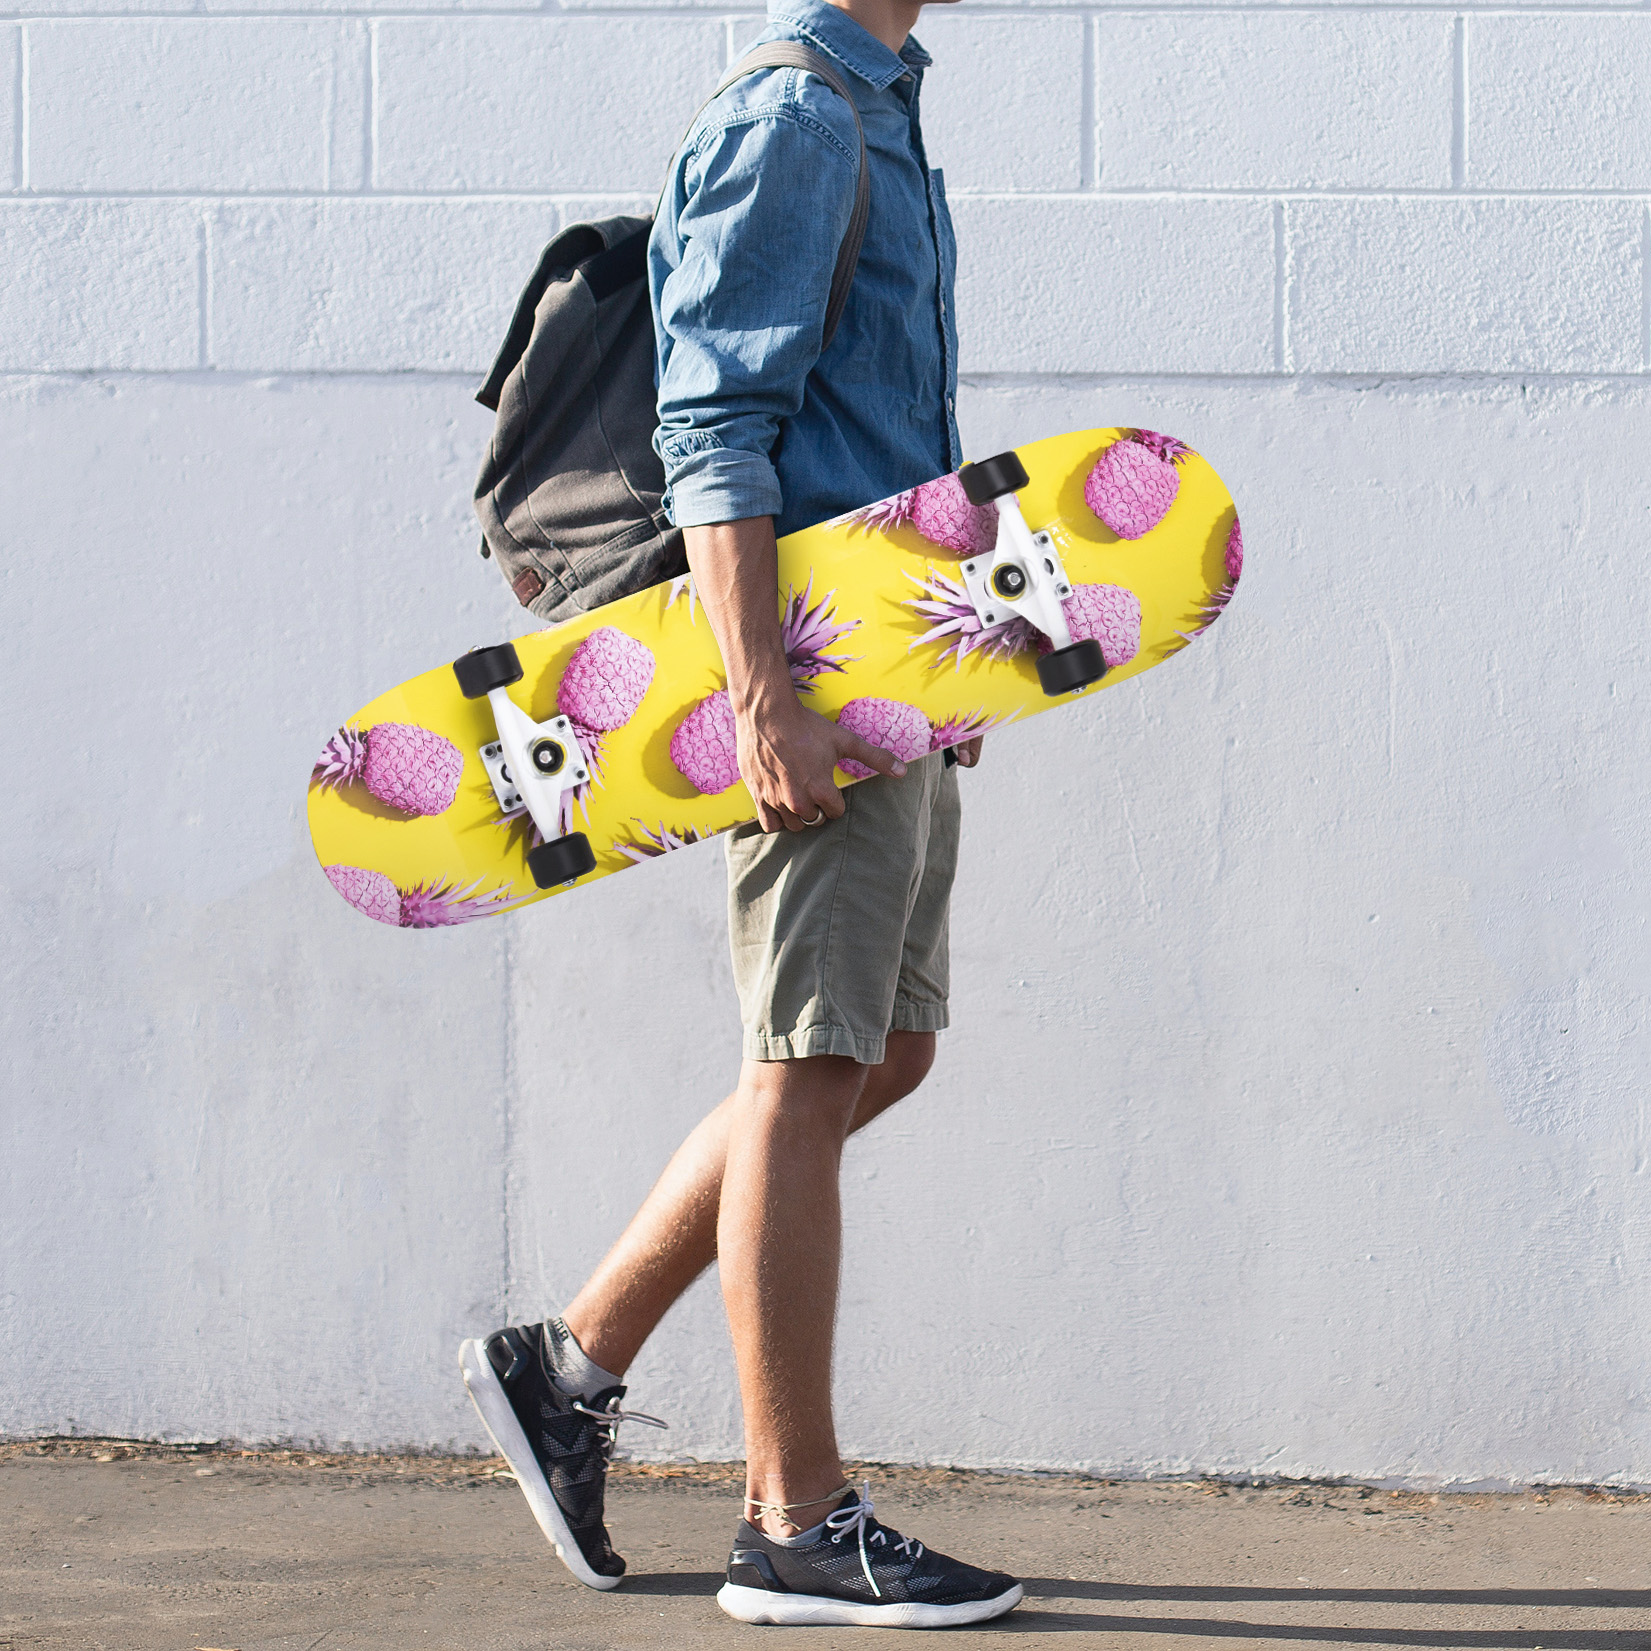 Double Rocker Skateboard Teenagers Adult Beginners Complete Skateboard High Speed Drift Four-wheel Skateboard